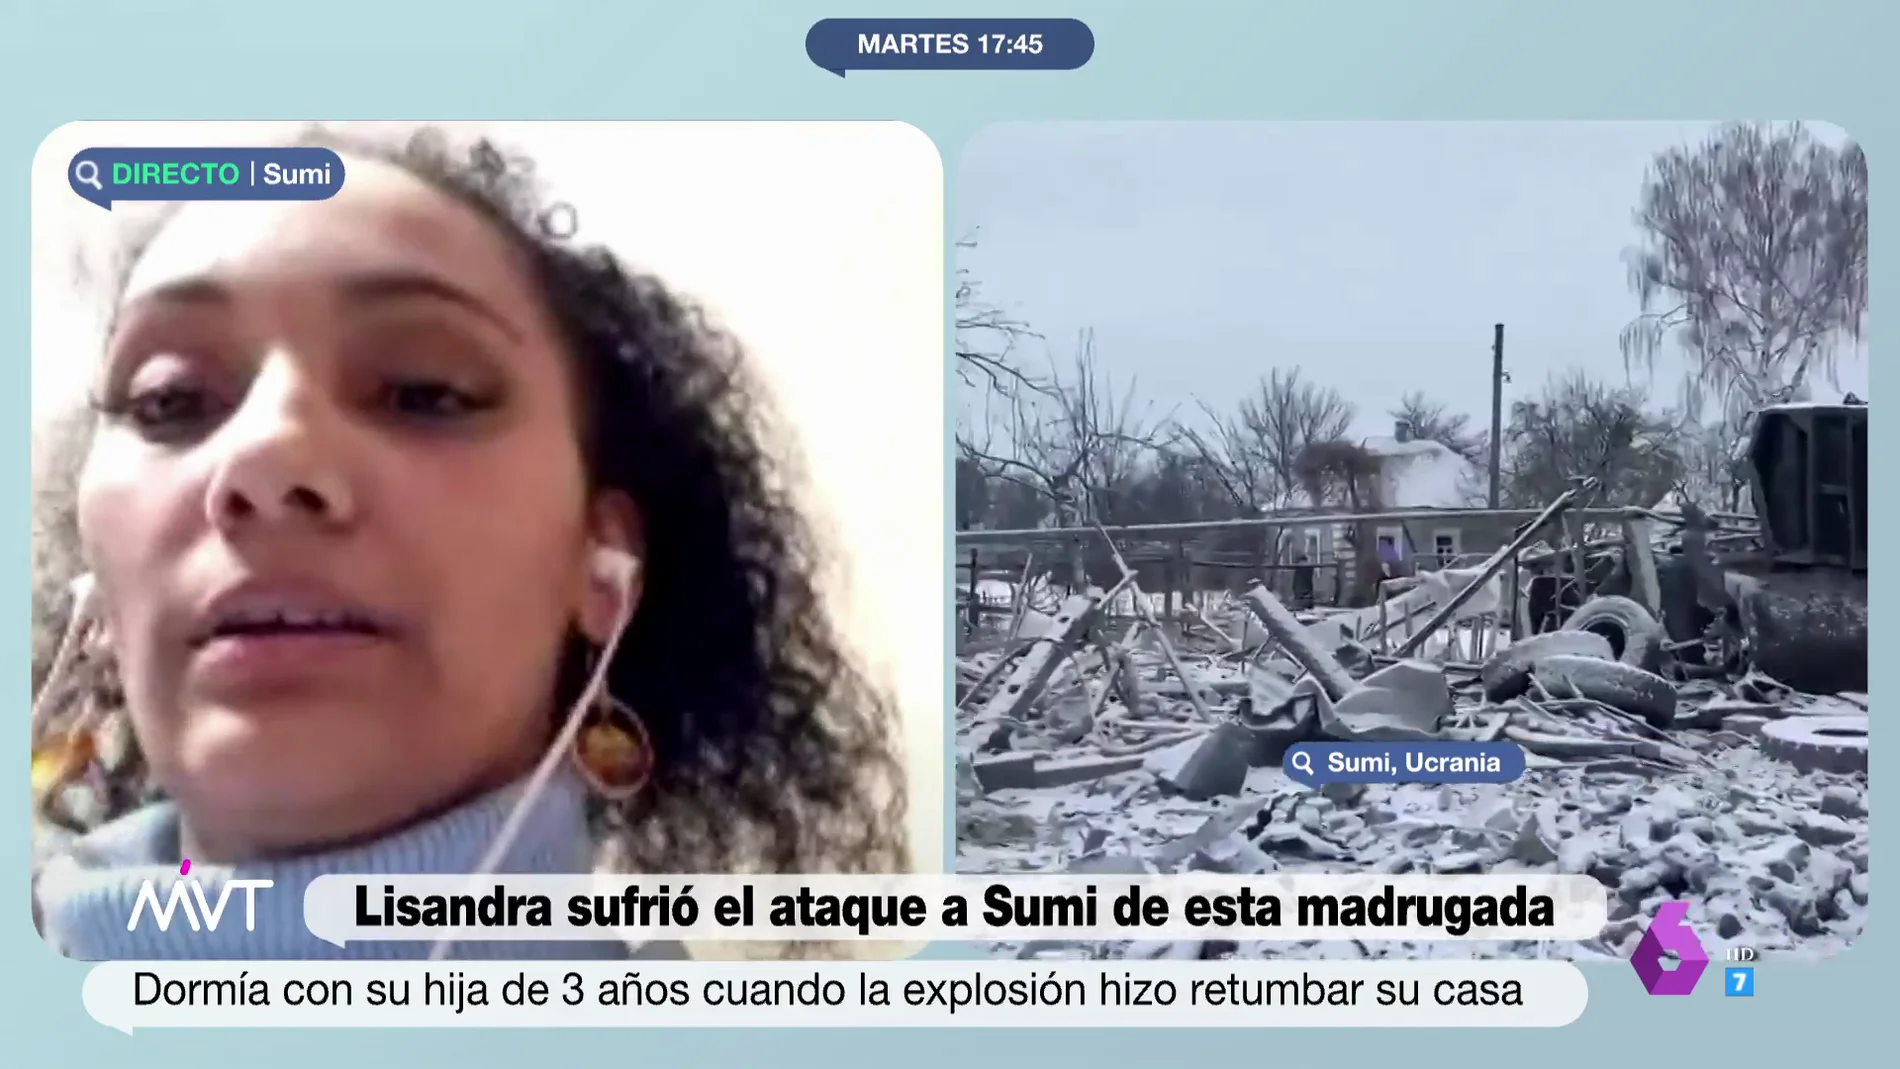 Lisandra relata cómo vivió el bombardeo de Sumy: "Se estremeció la casa completa, fue terrible"